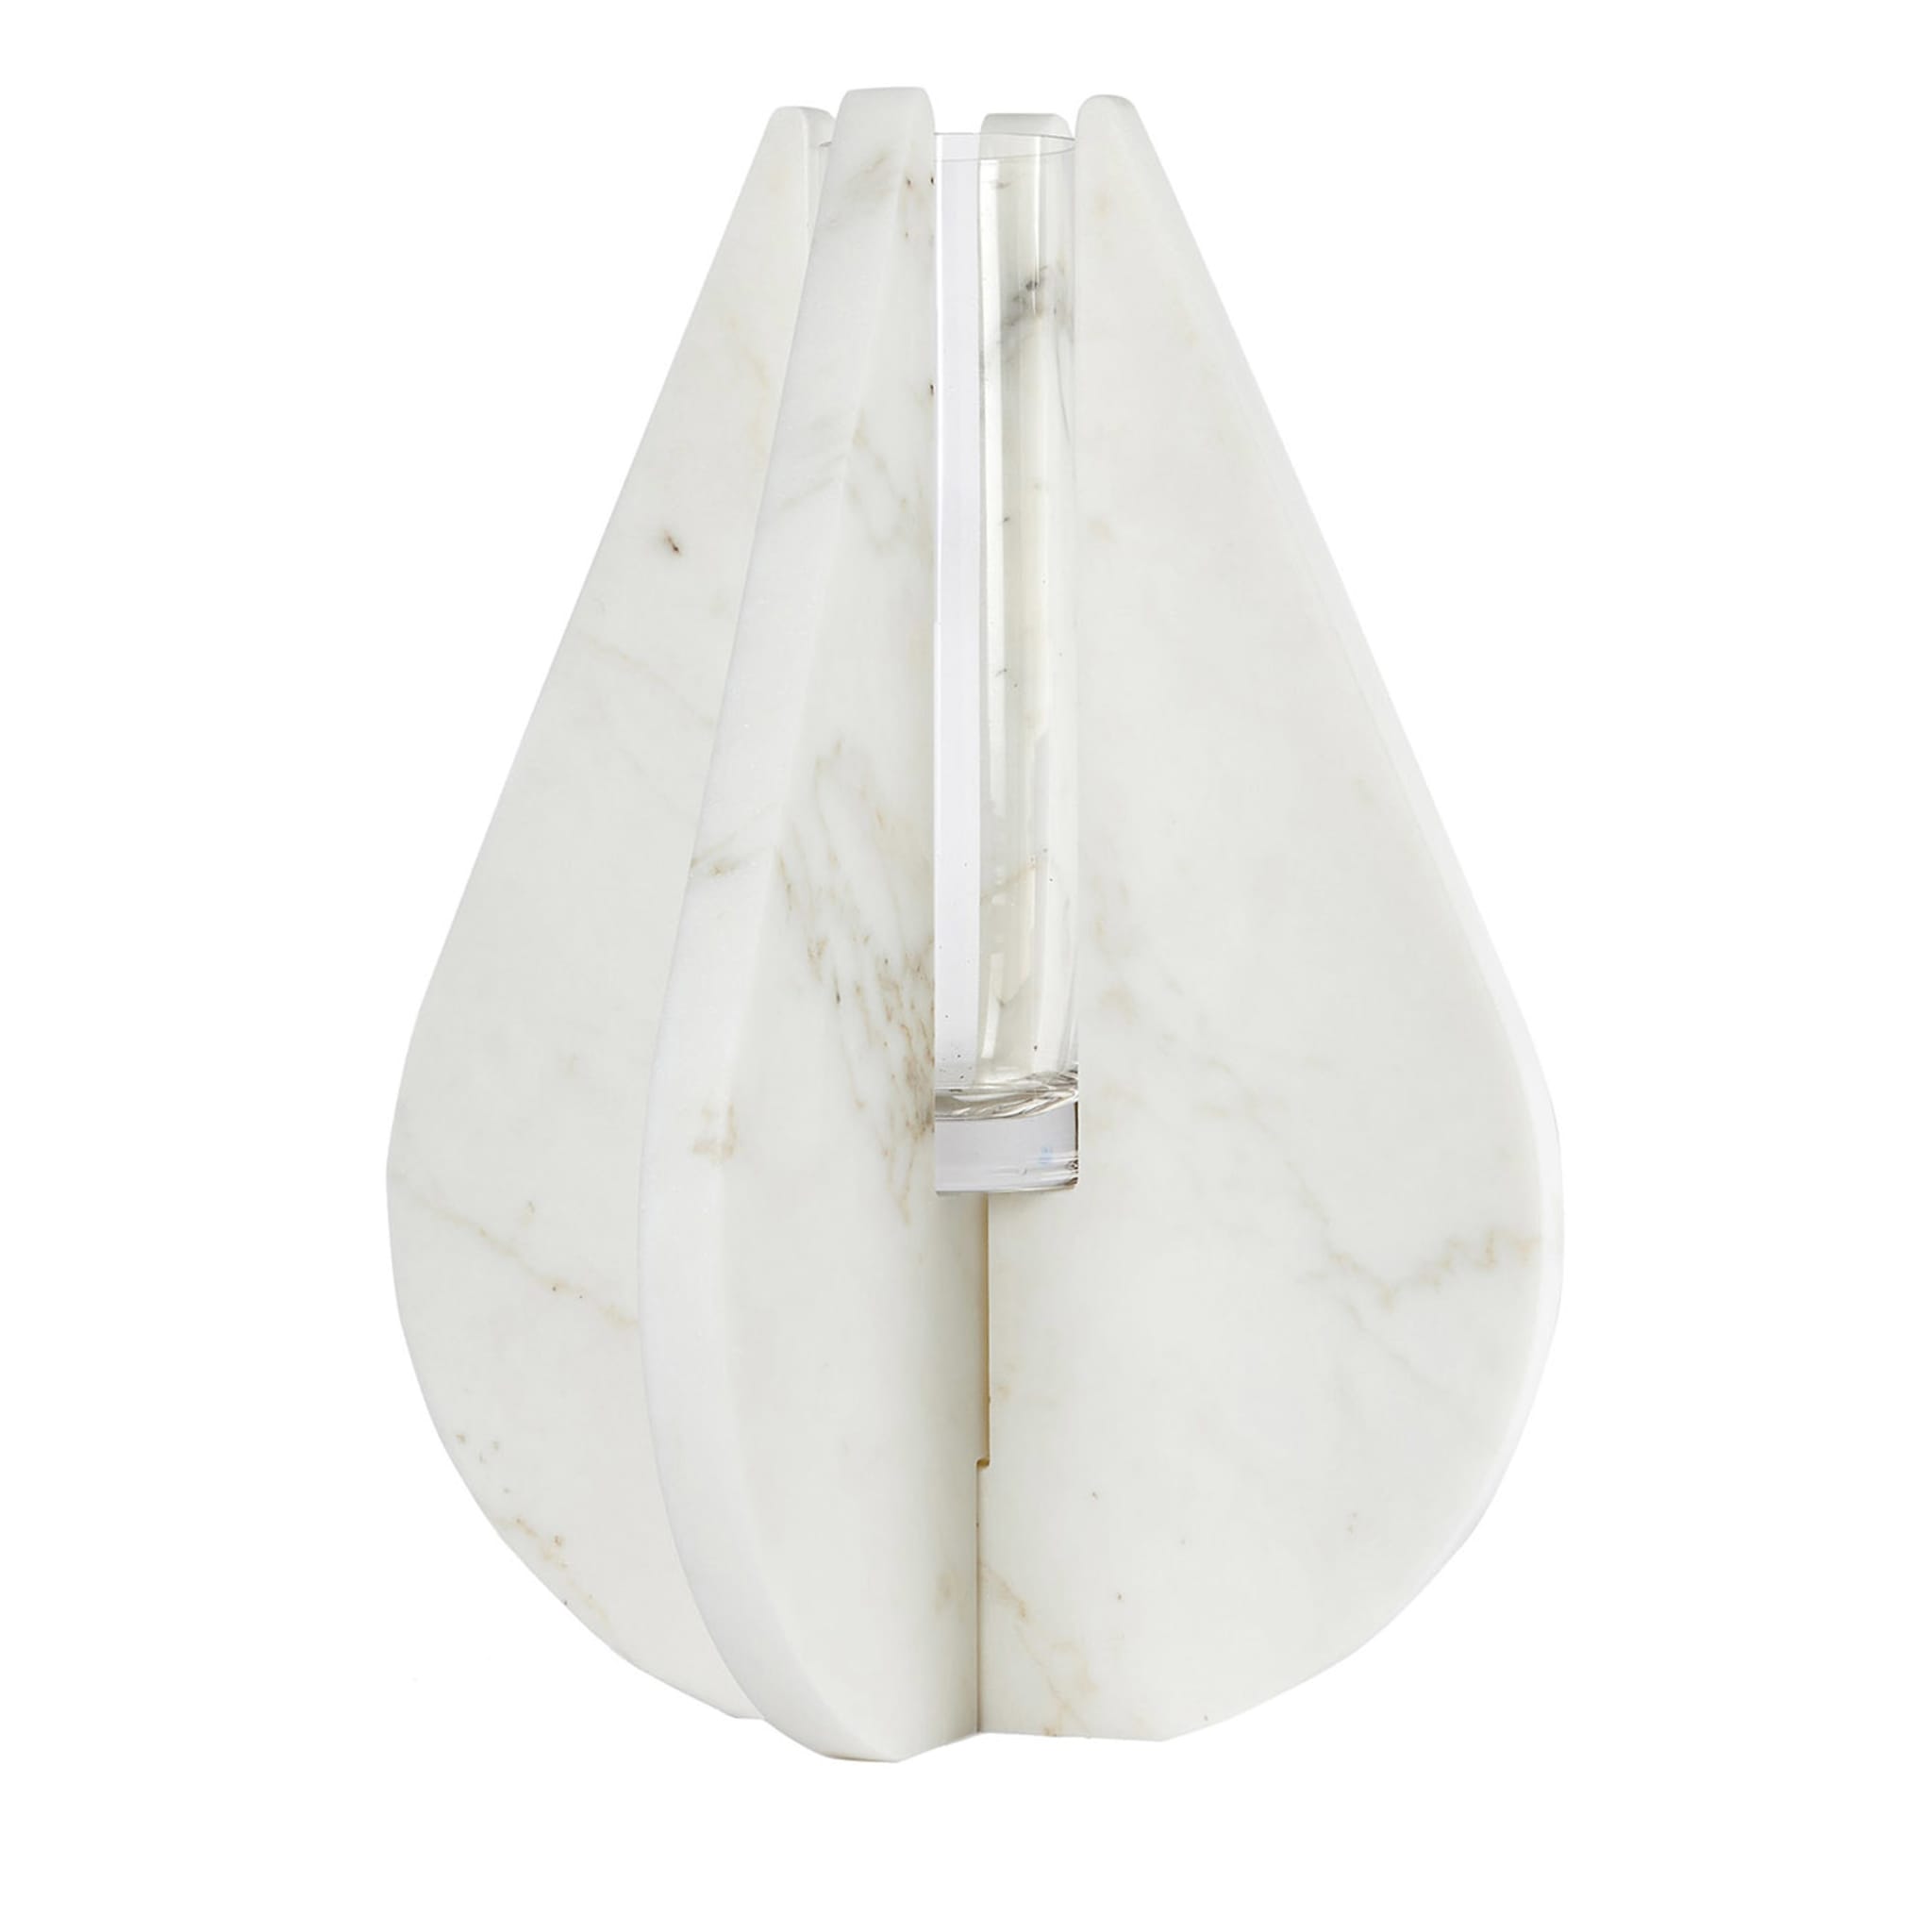 Vaso Drop White Carrara #3 di Alessandra Grasso - Vista principale